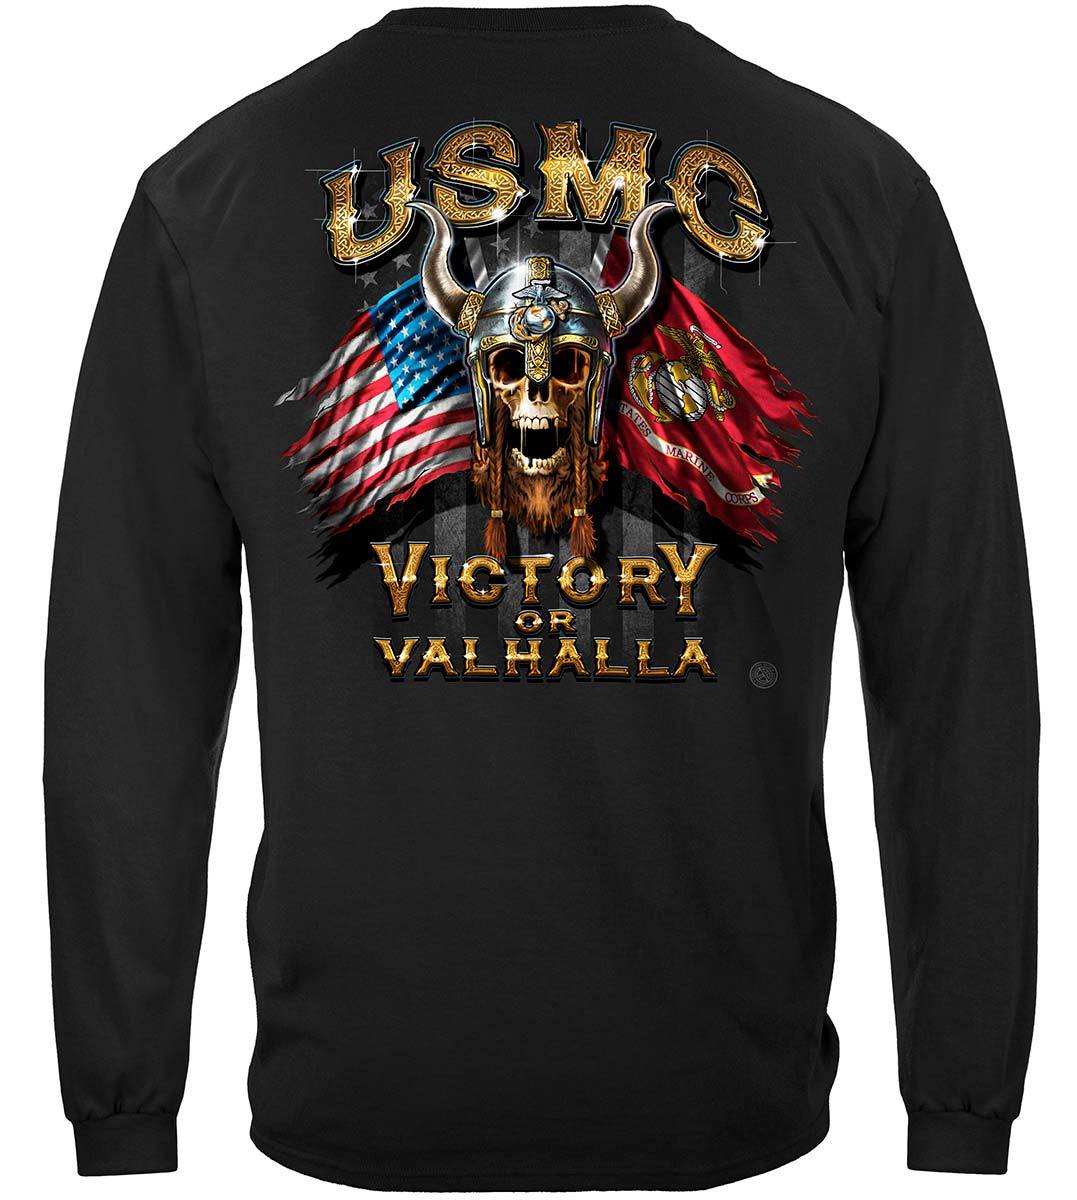 USMC Viking Warrior Premium Hooded Sweat Shirt